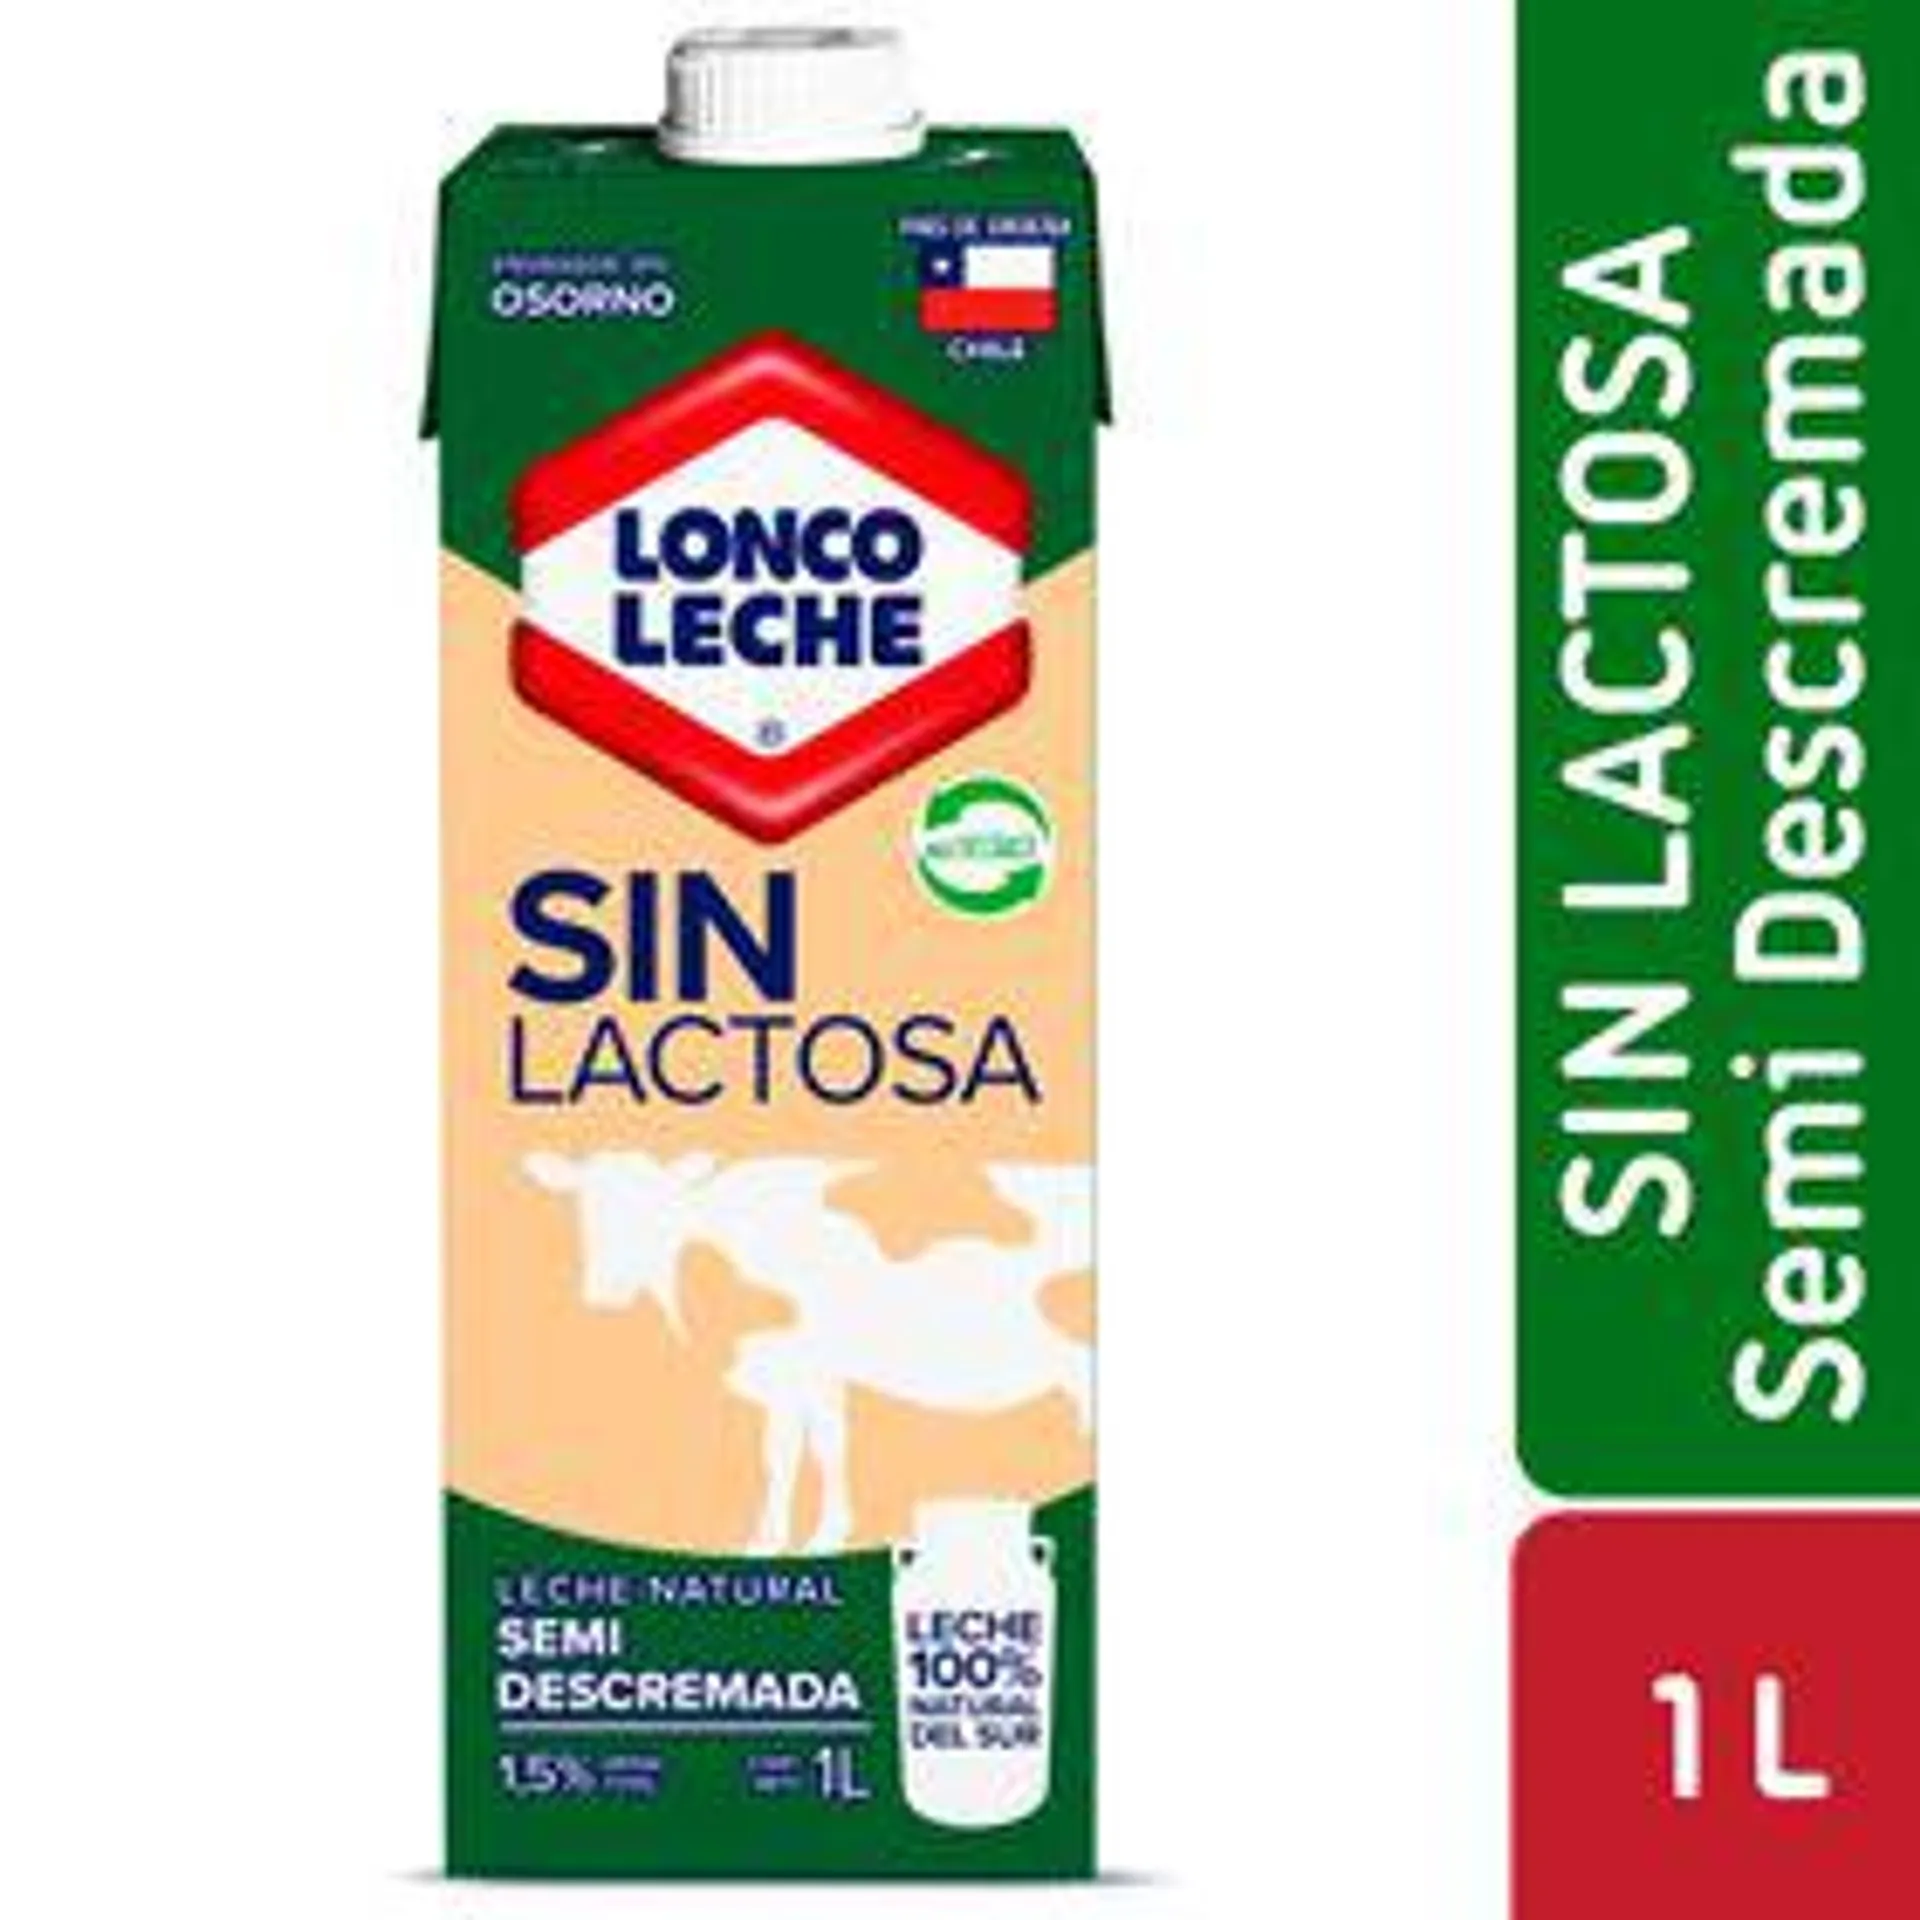 Leche semidescremada sin lactosa Loncoleche 1 L